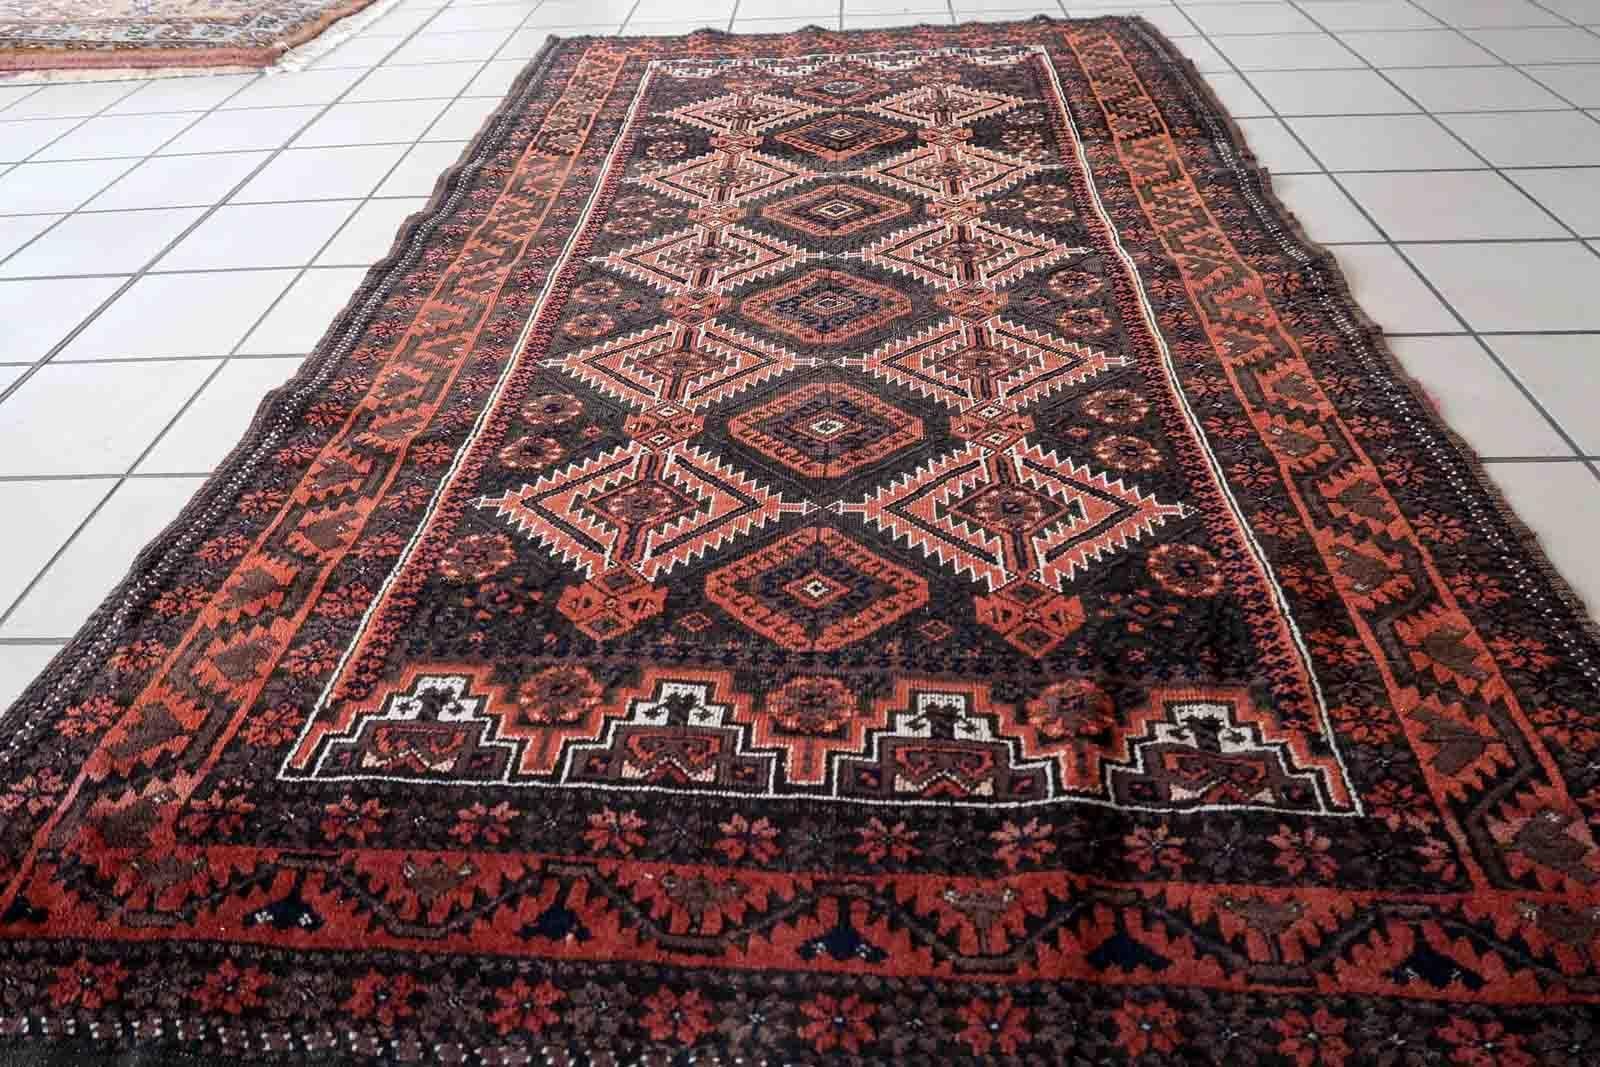 Tapis ancien afghan Baluch, fait à la main, au motif tribal traditionnel. Le tapis date du début du 20ème siècle et est en état d'origine, il a quelques poils bas minimes.

-état : original, un peu abîmé,

-Circa : 1920,

-Taille : 102 cm x 181 cm